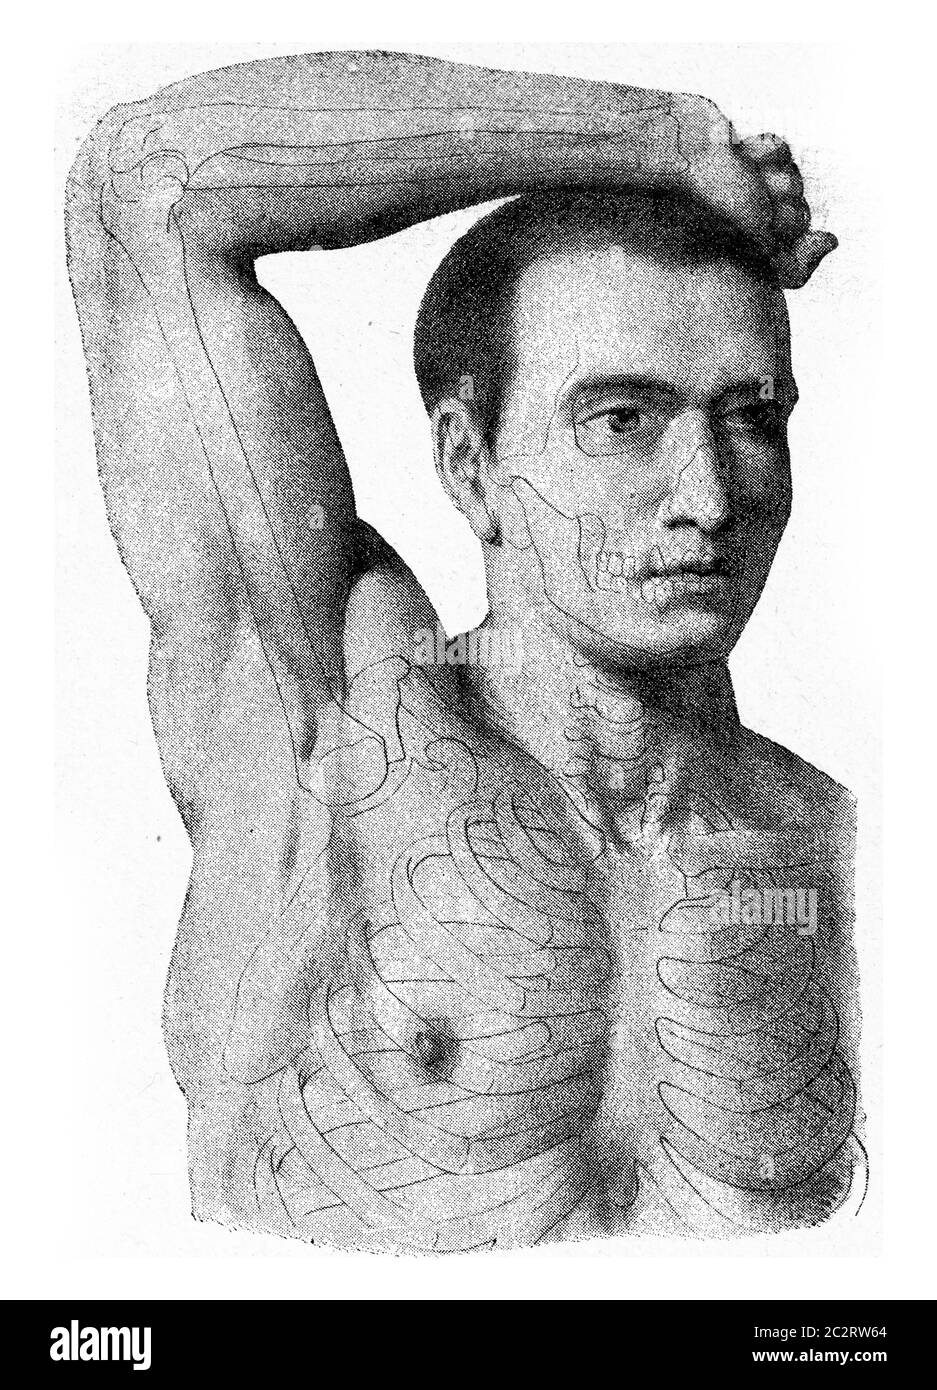 Die Muskeln des Armes der Hand des Mannes angehoben, vintage graviert Illustration. Aus dem Universum und der Menschheit, 1910. Stockfoto